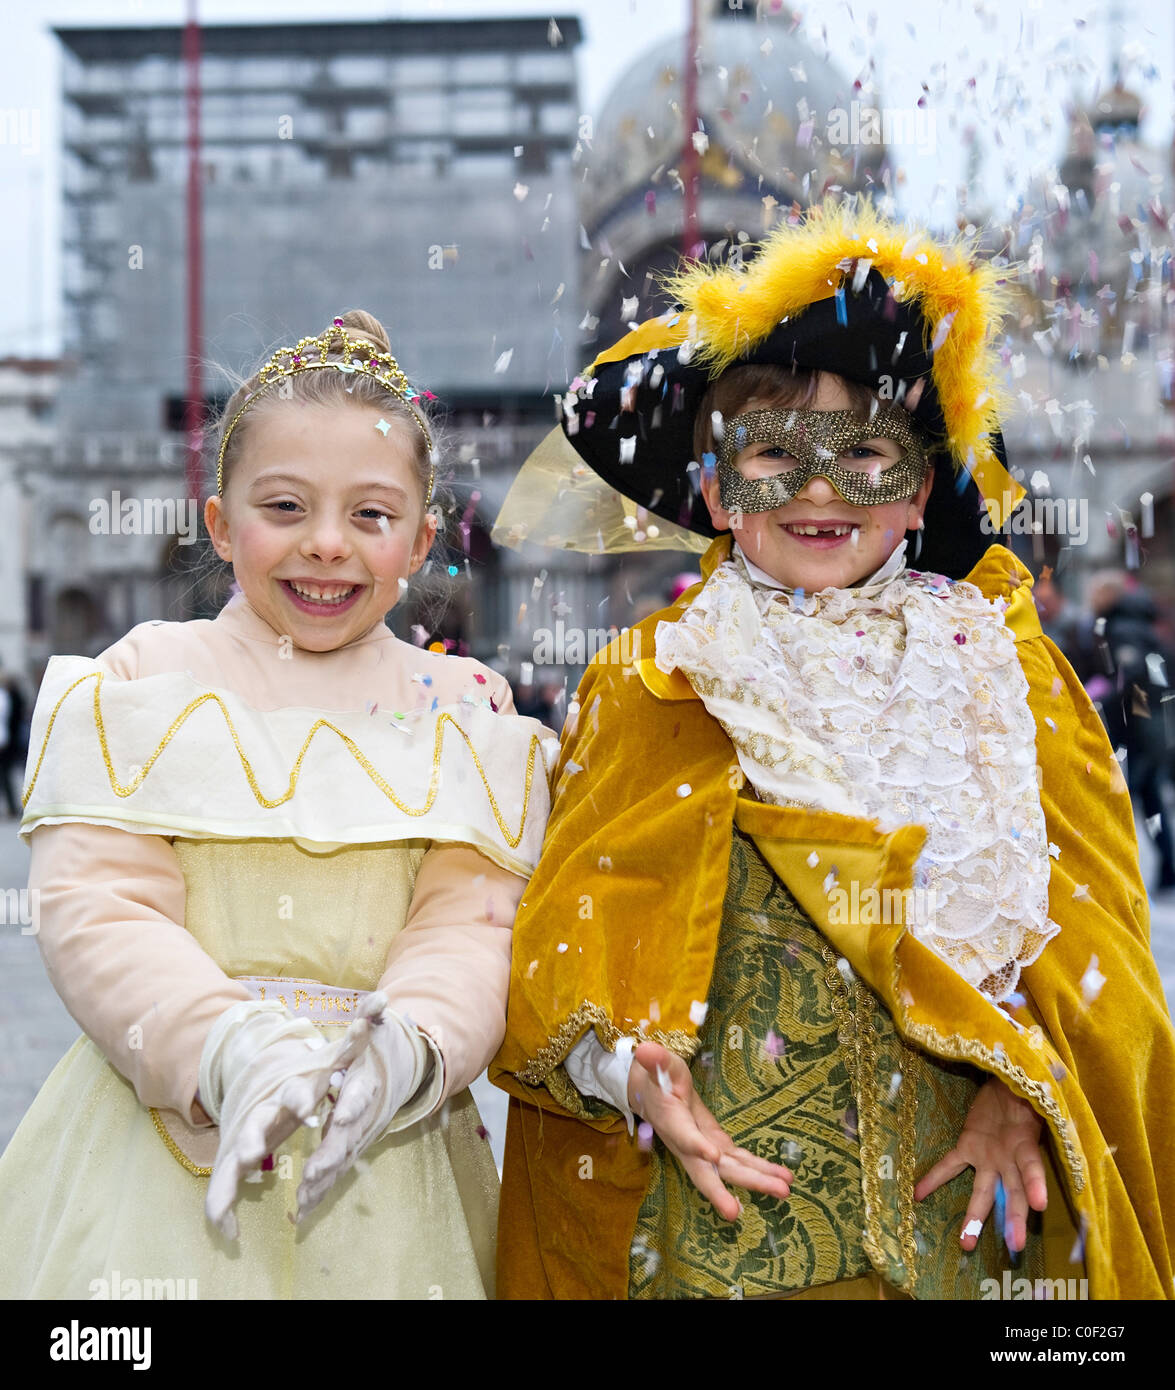 por favor confirmar Ocupar Ejecutante Dos niños que vestían trajes de carnaval, en la Plaza de San Marcos Venecia  Italia Fotografía de stock - Alamy